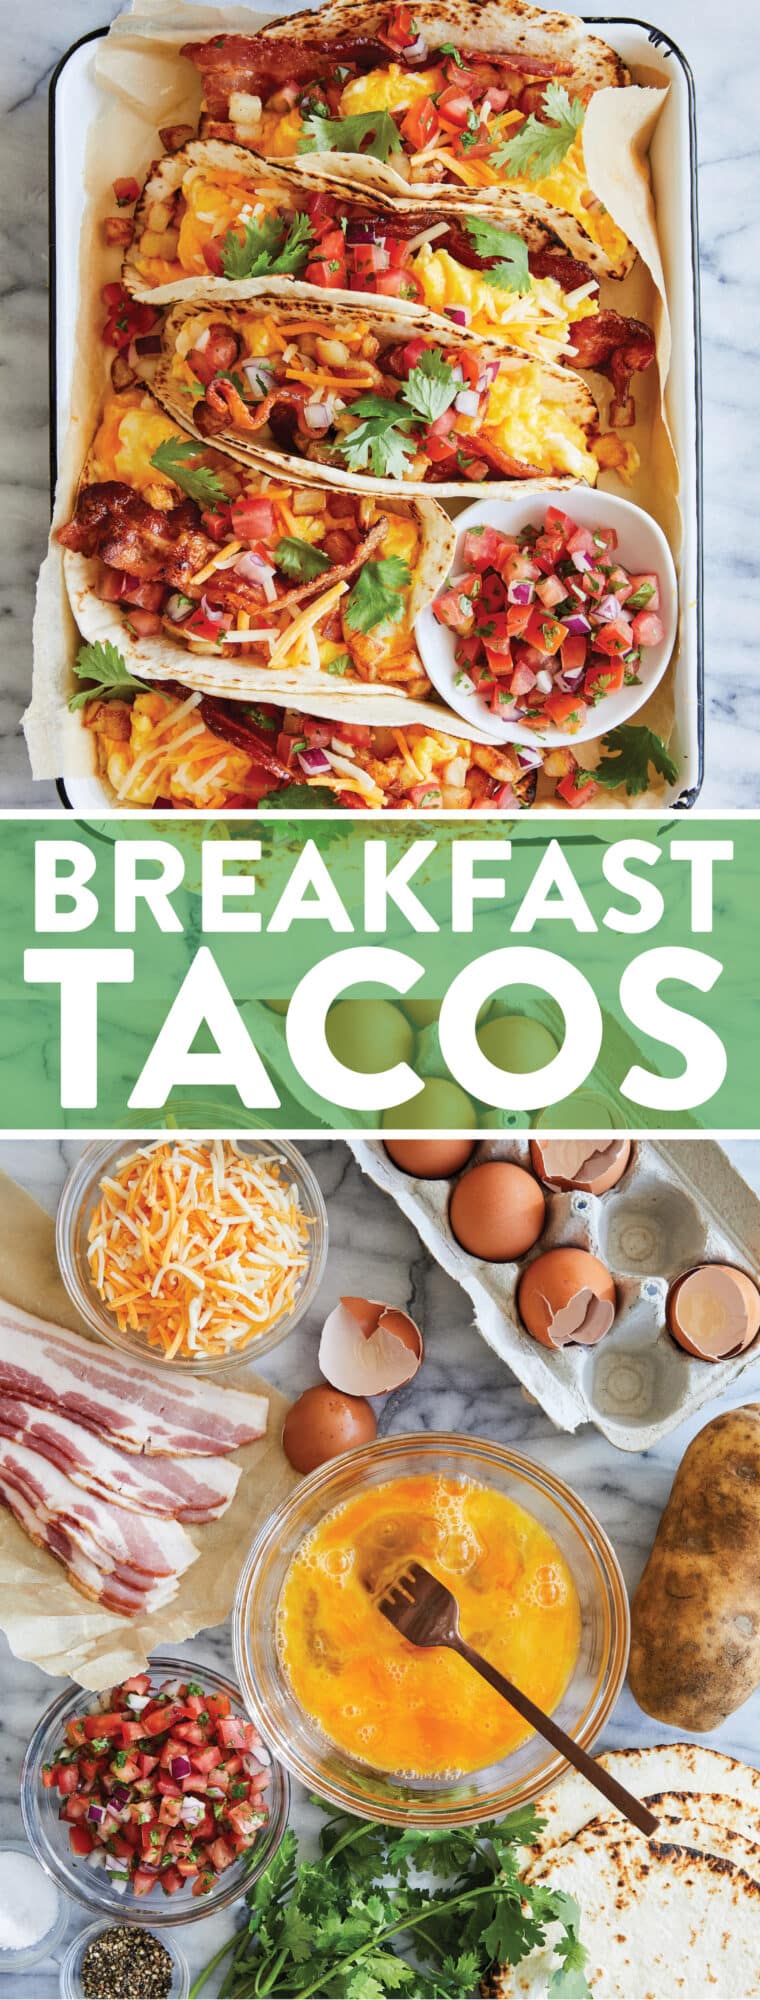 Tacos de café da manhã - um favorito absoluto da multidão!  Servido em tortillas quentinhas com bacon crocante, batatas, ovos mexidos e seus toppings preferidos!